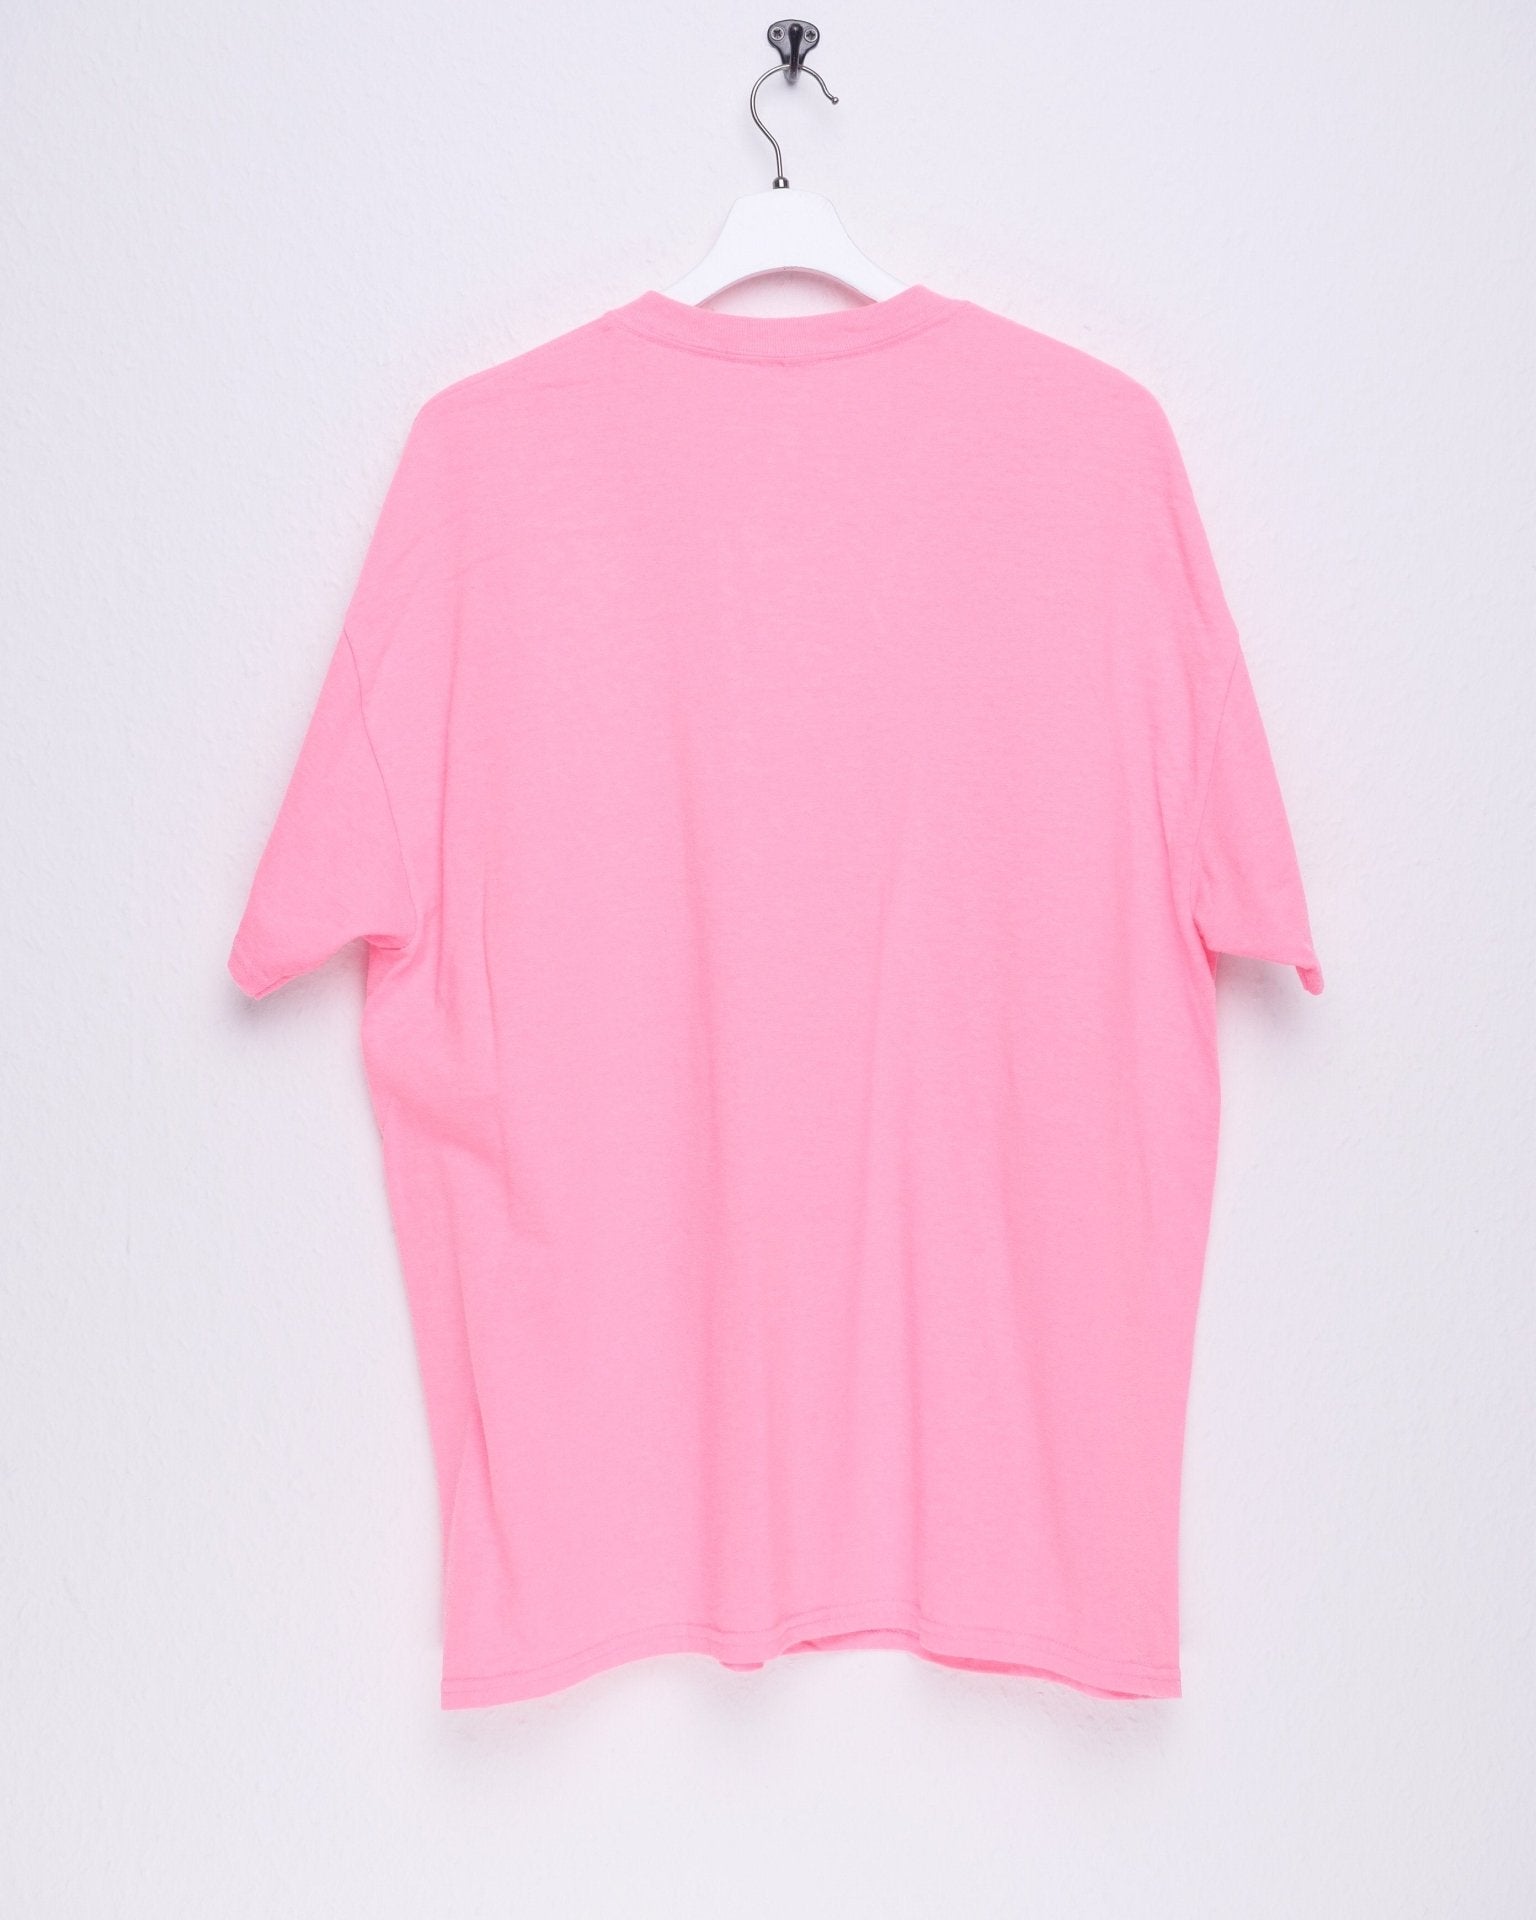 Soccer Lititz Pennsylvania printed Logo neon pink Shirt - Peeces